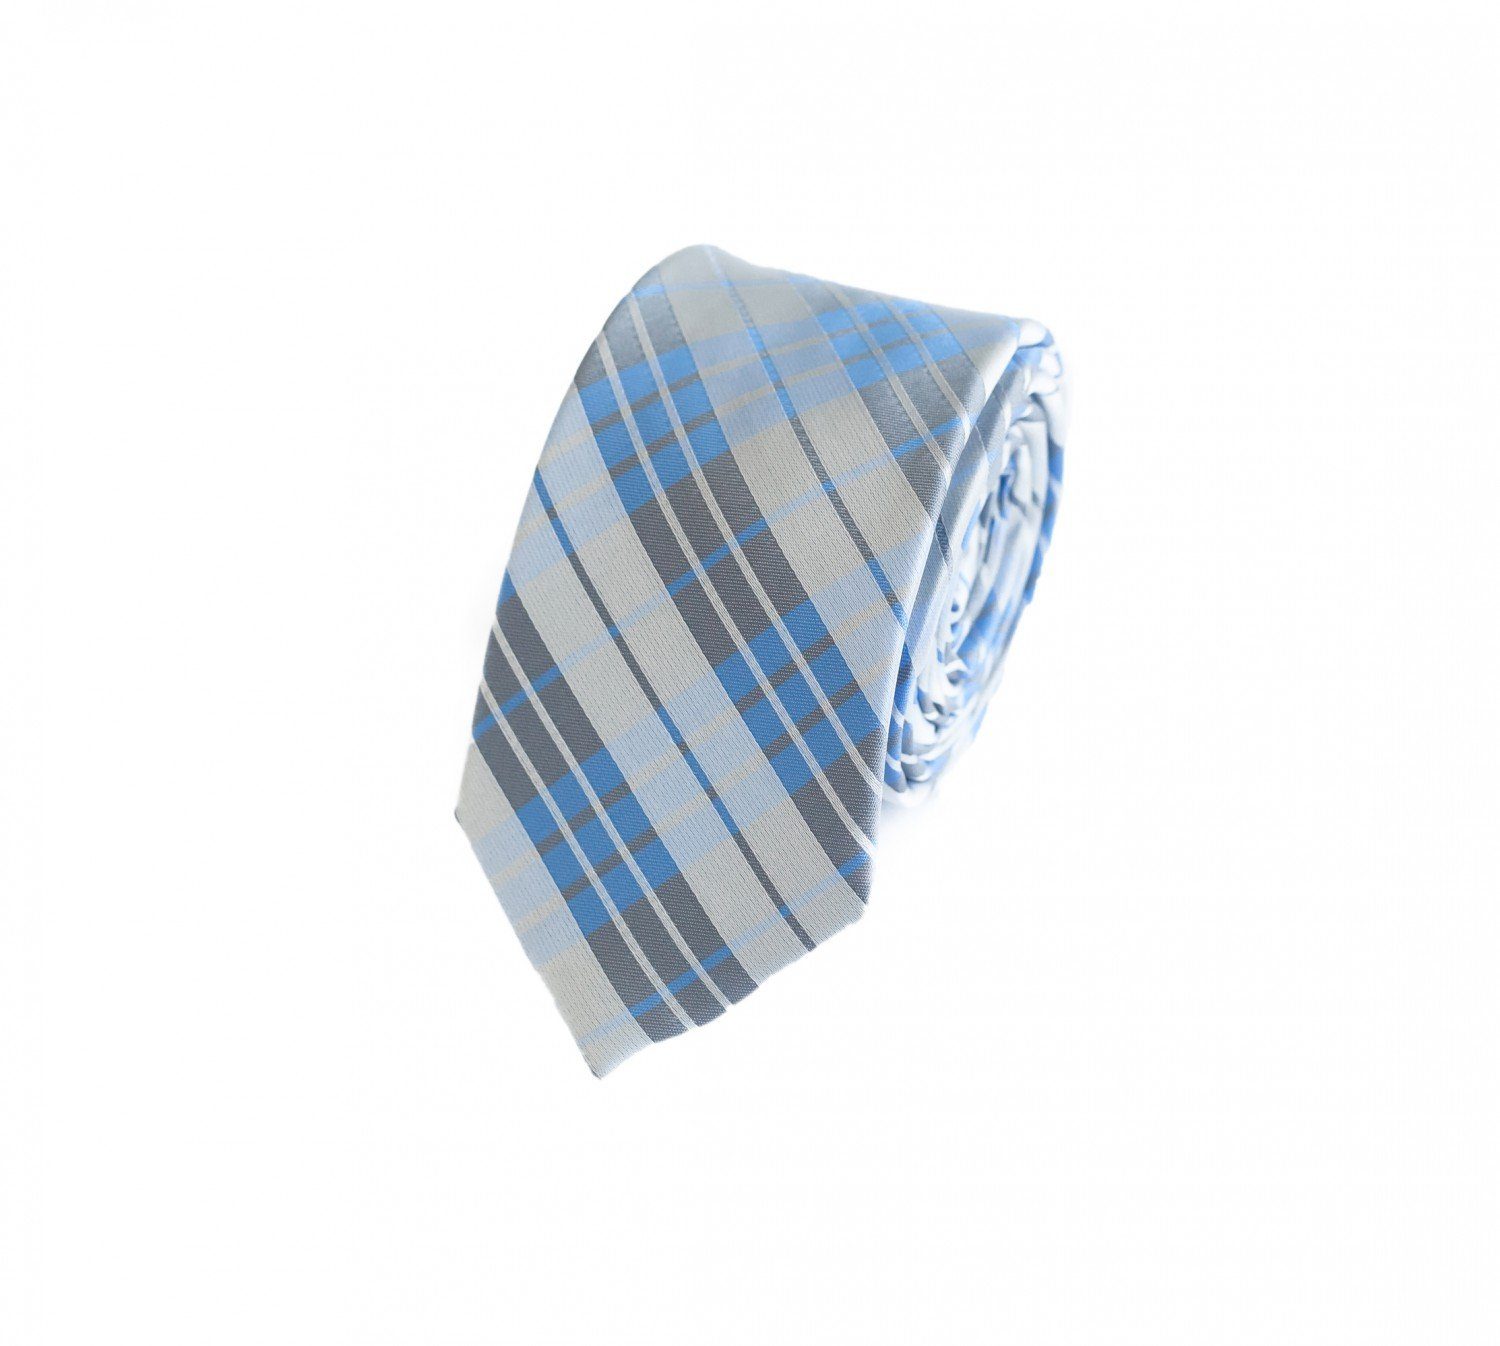 Willkommen beim Kauf. Fabio Farini Krawatte Herren - Männer verschiedene Blau Quartz in 6cm Gray/Ocean Schlips Weiß Weiß White/Dark Schmal - (Gestreift) Grau Weiße (6cm), Krawatte